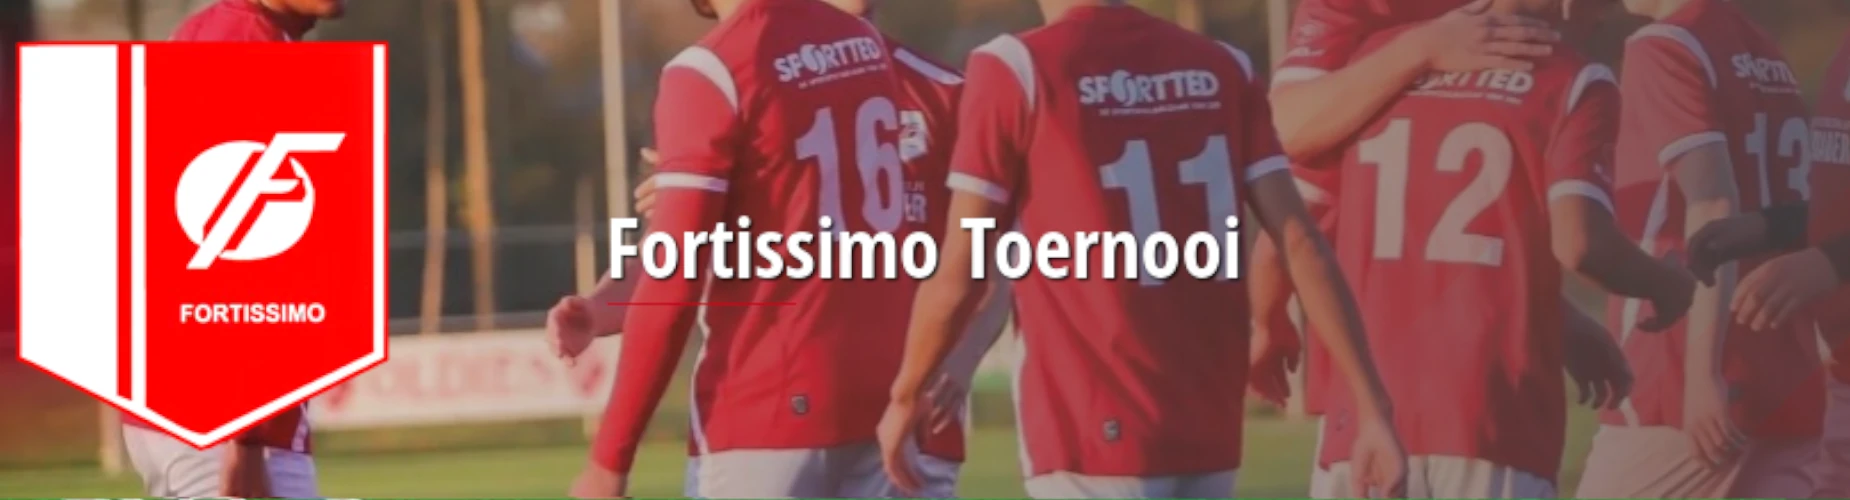 Banner - Fortissimo Toernooi - KSV Fortissimo - Ede